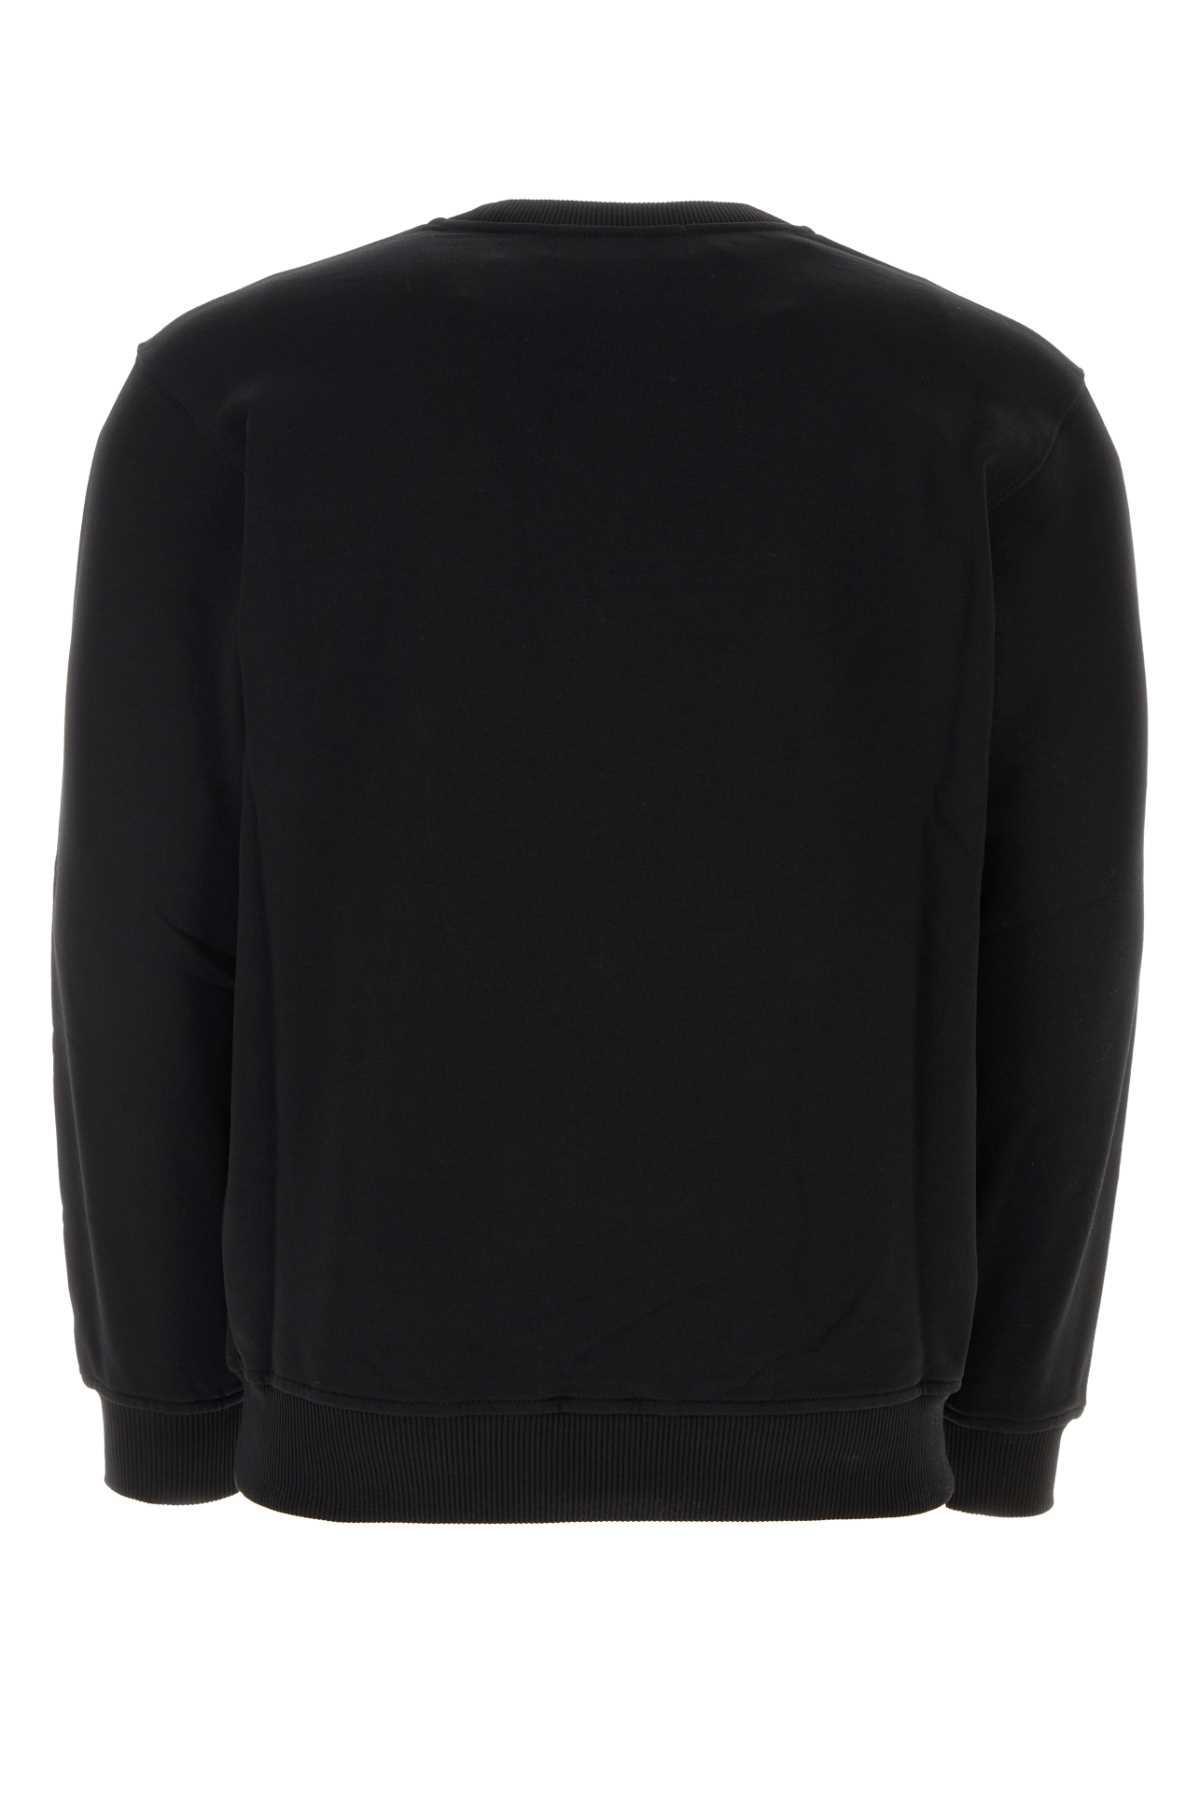 Comme Des Garçons Shirt Black Cotton Comme Des Garã§ons Shirt X Lacoste Sweatshirt